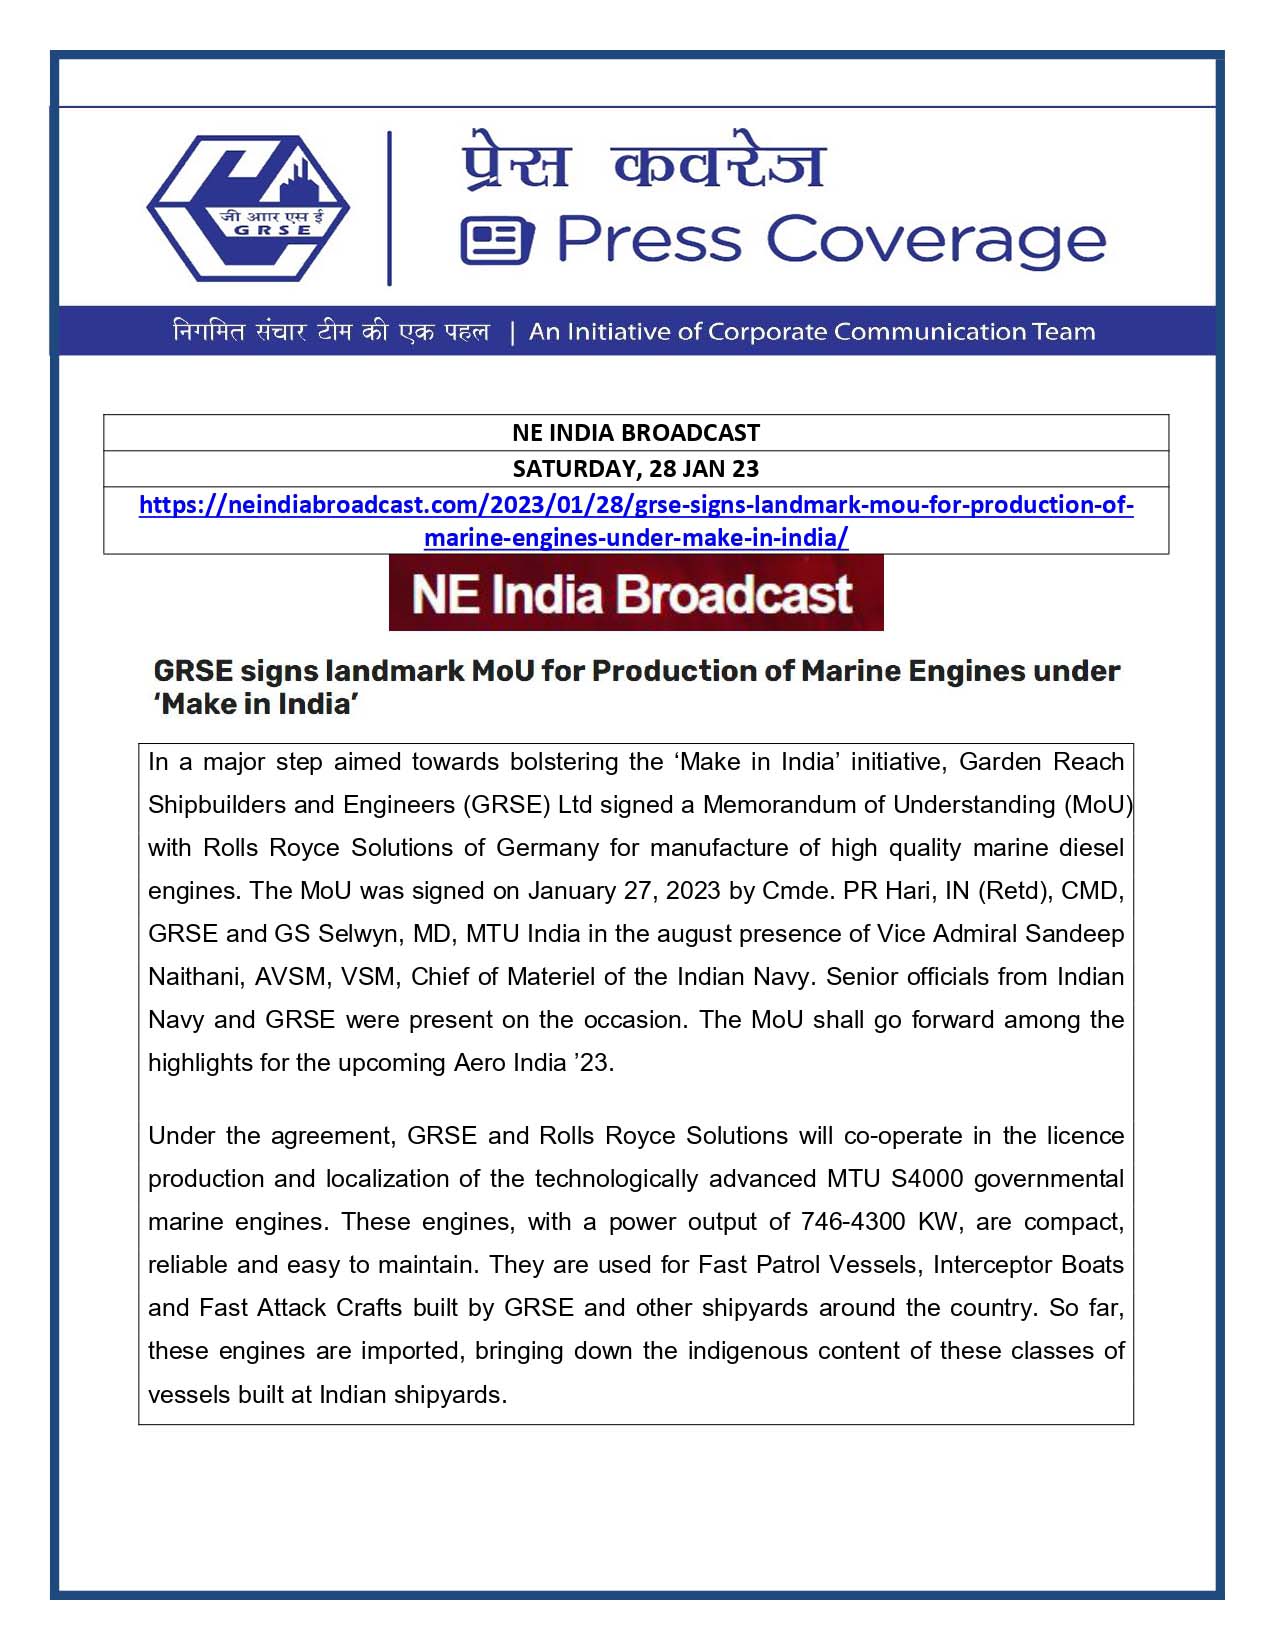 NE India Broadcast 28 Jan 23